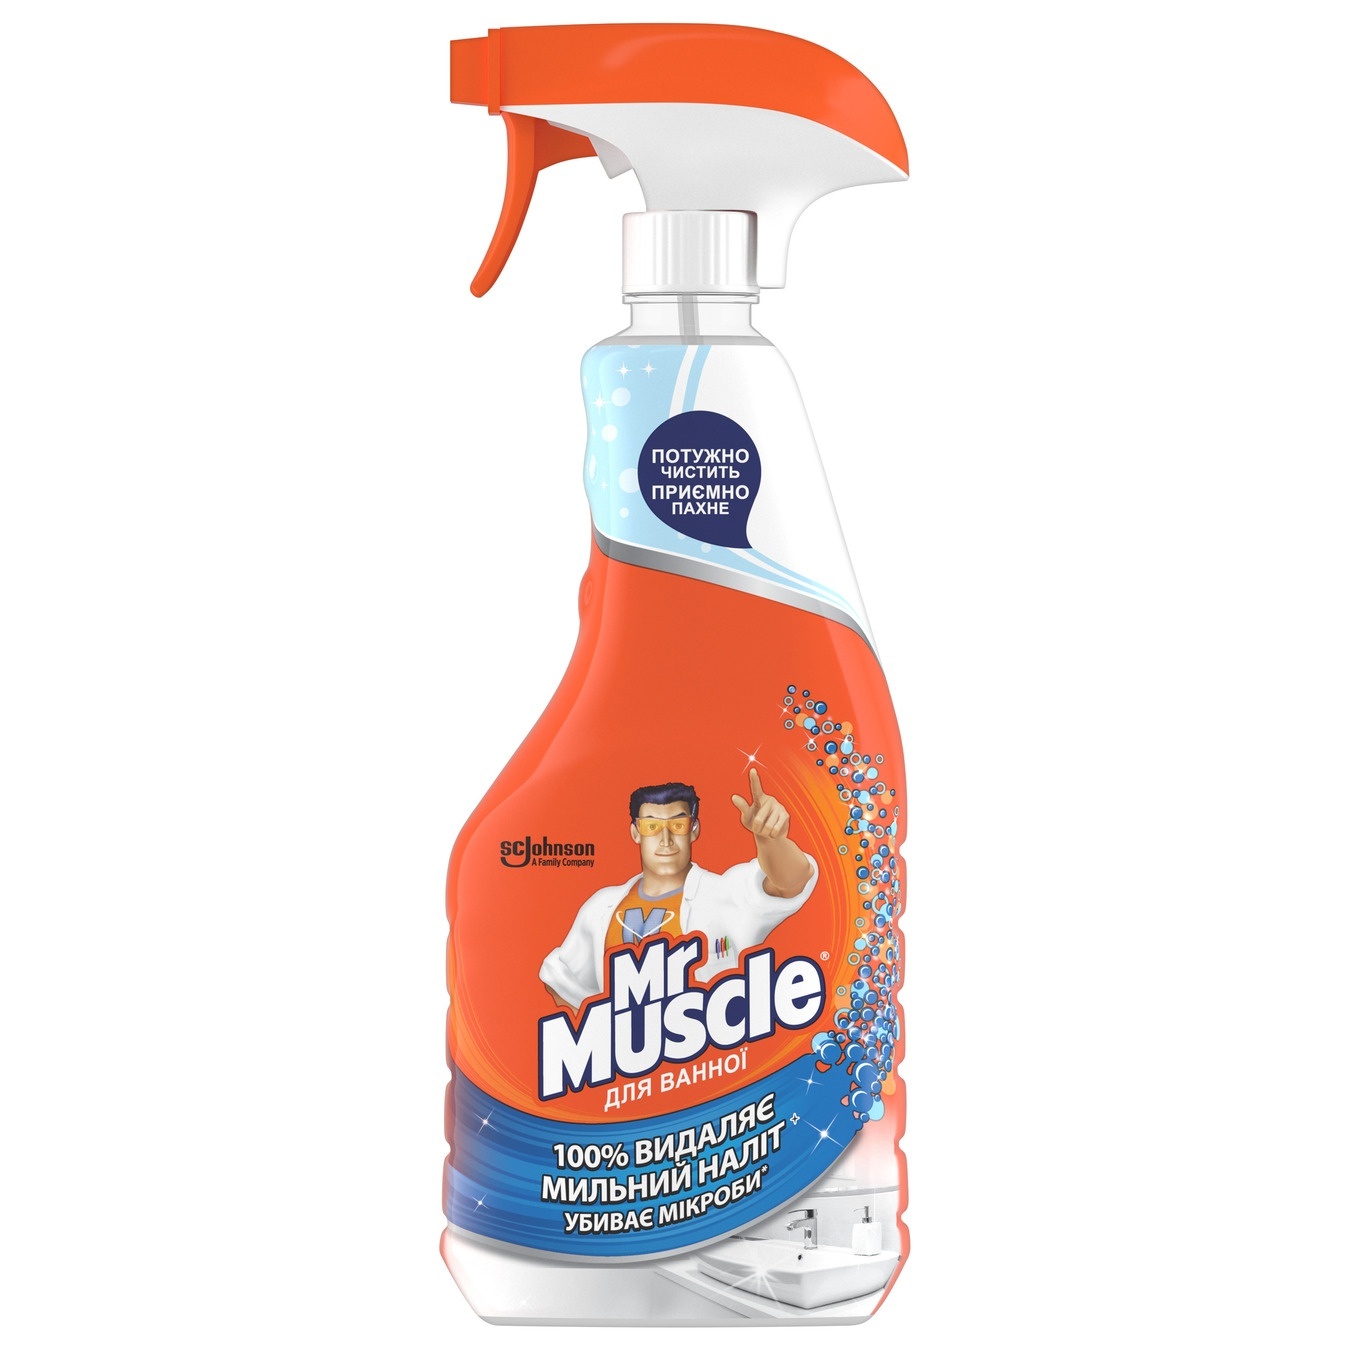 Bath detergent Mr. Muscle 500 ml